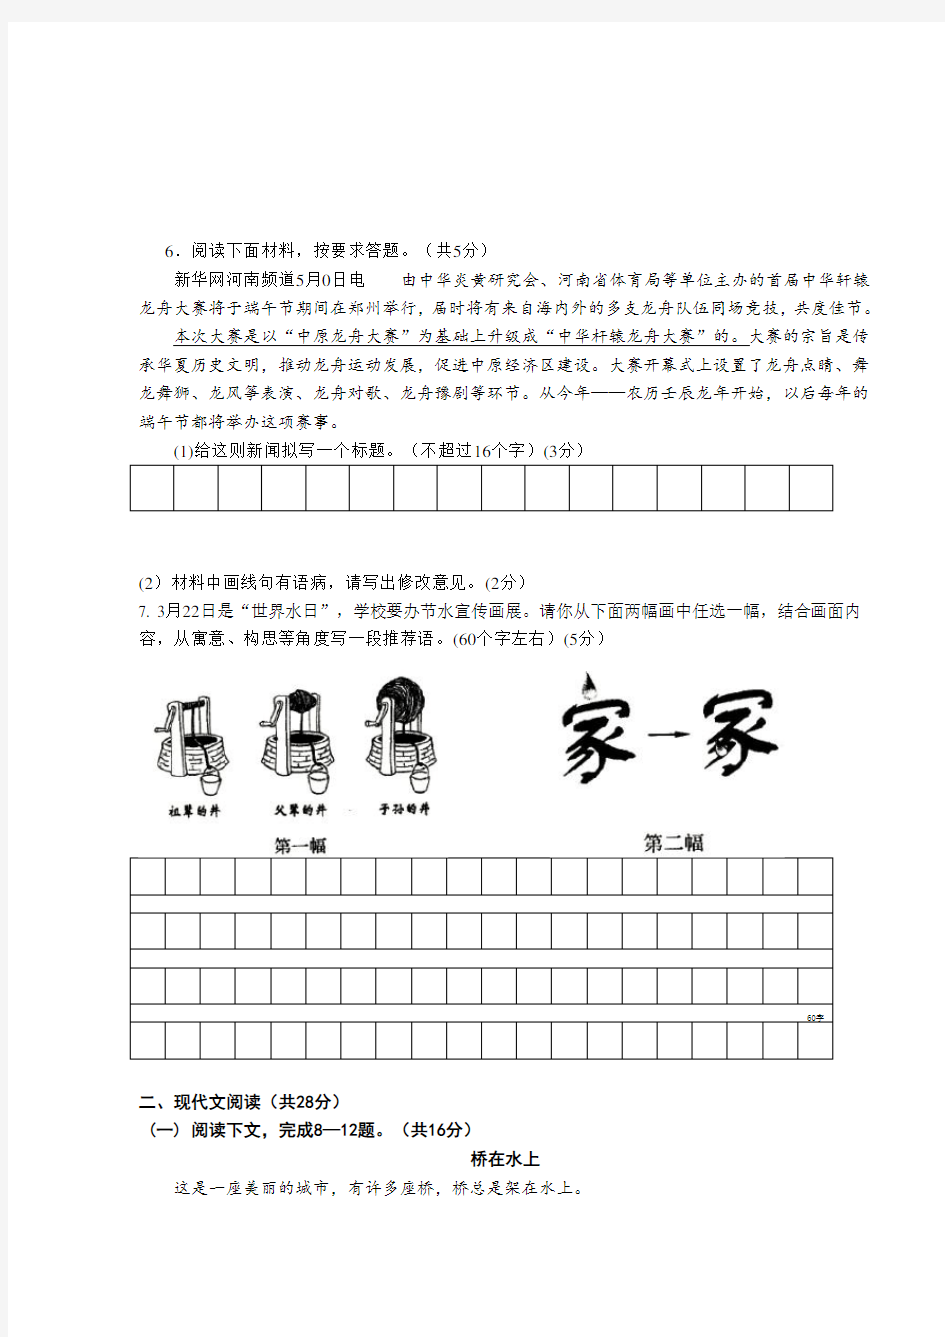 2012年河南省中考语文试卷及答案